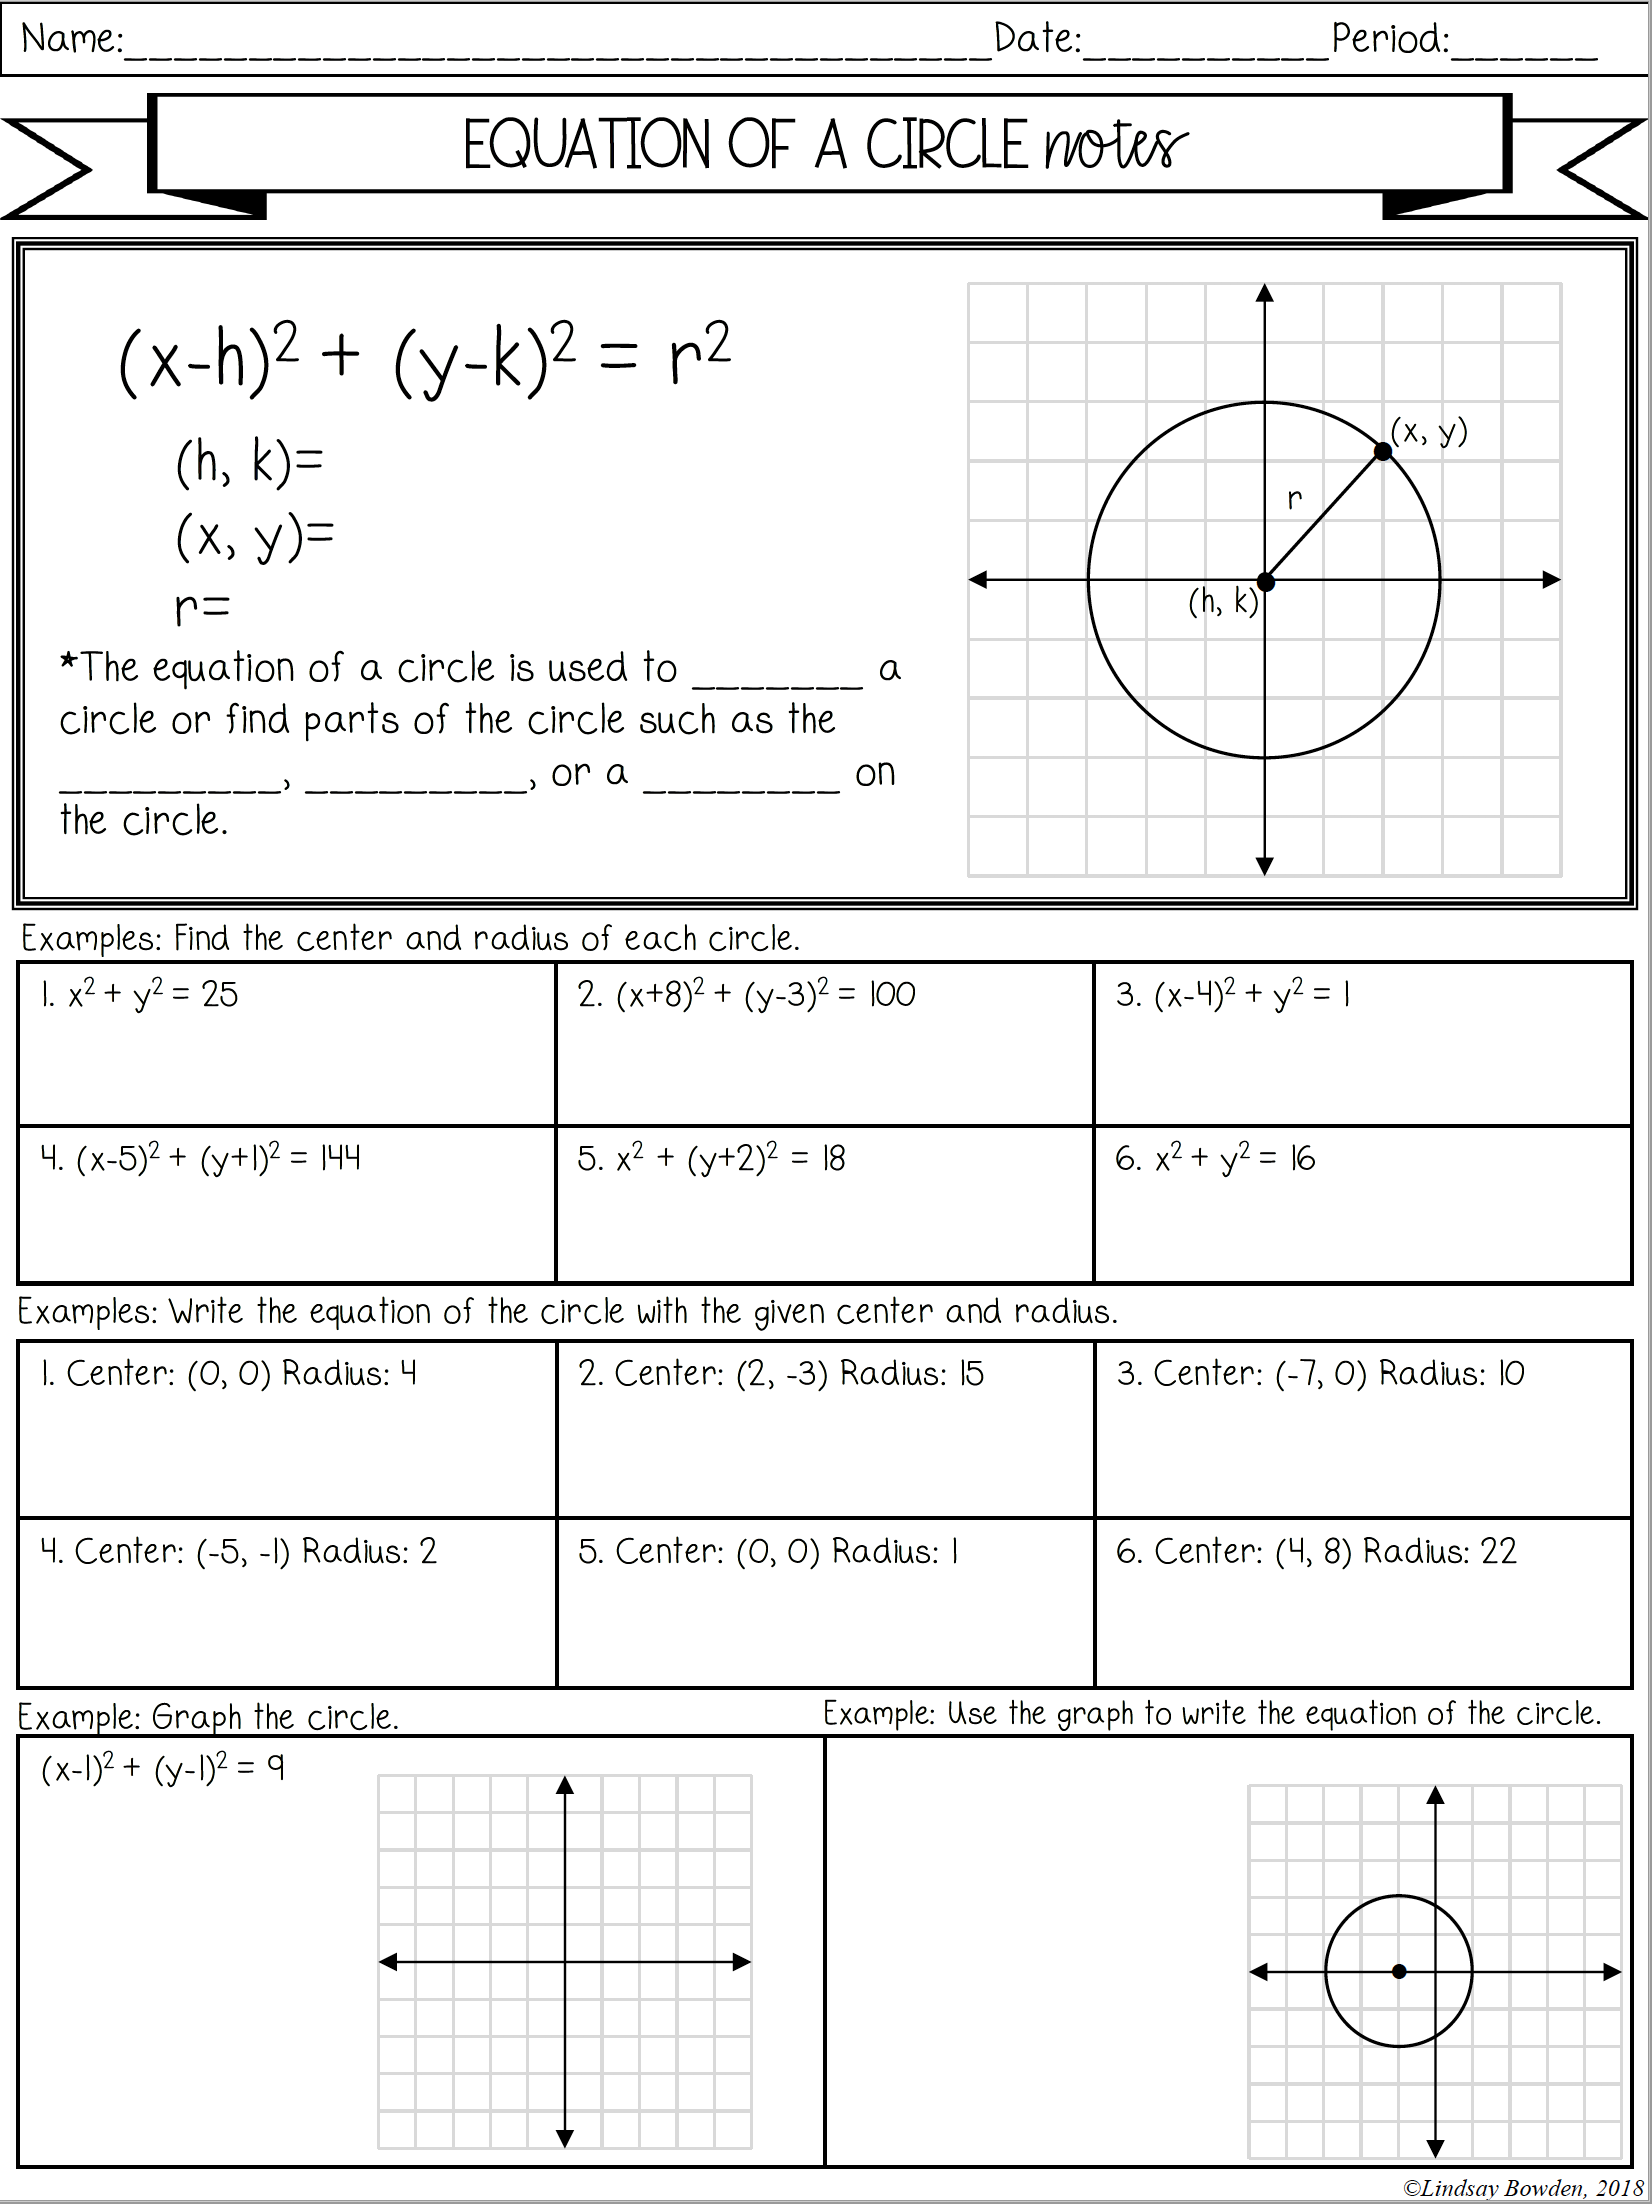 Equation Of A Circle Notes And Worksheets Lindsay Bowden